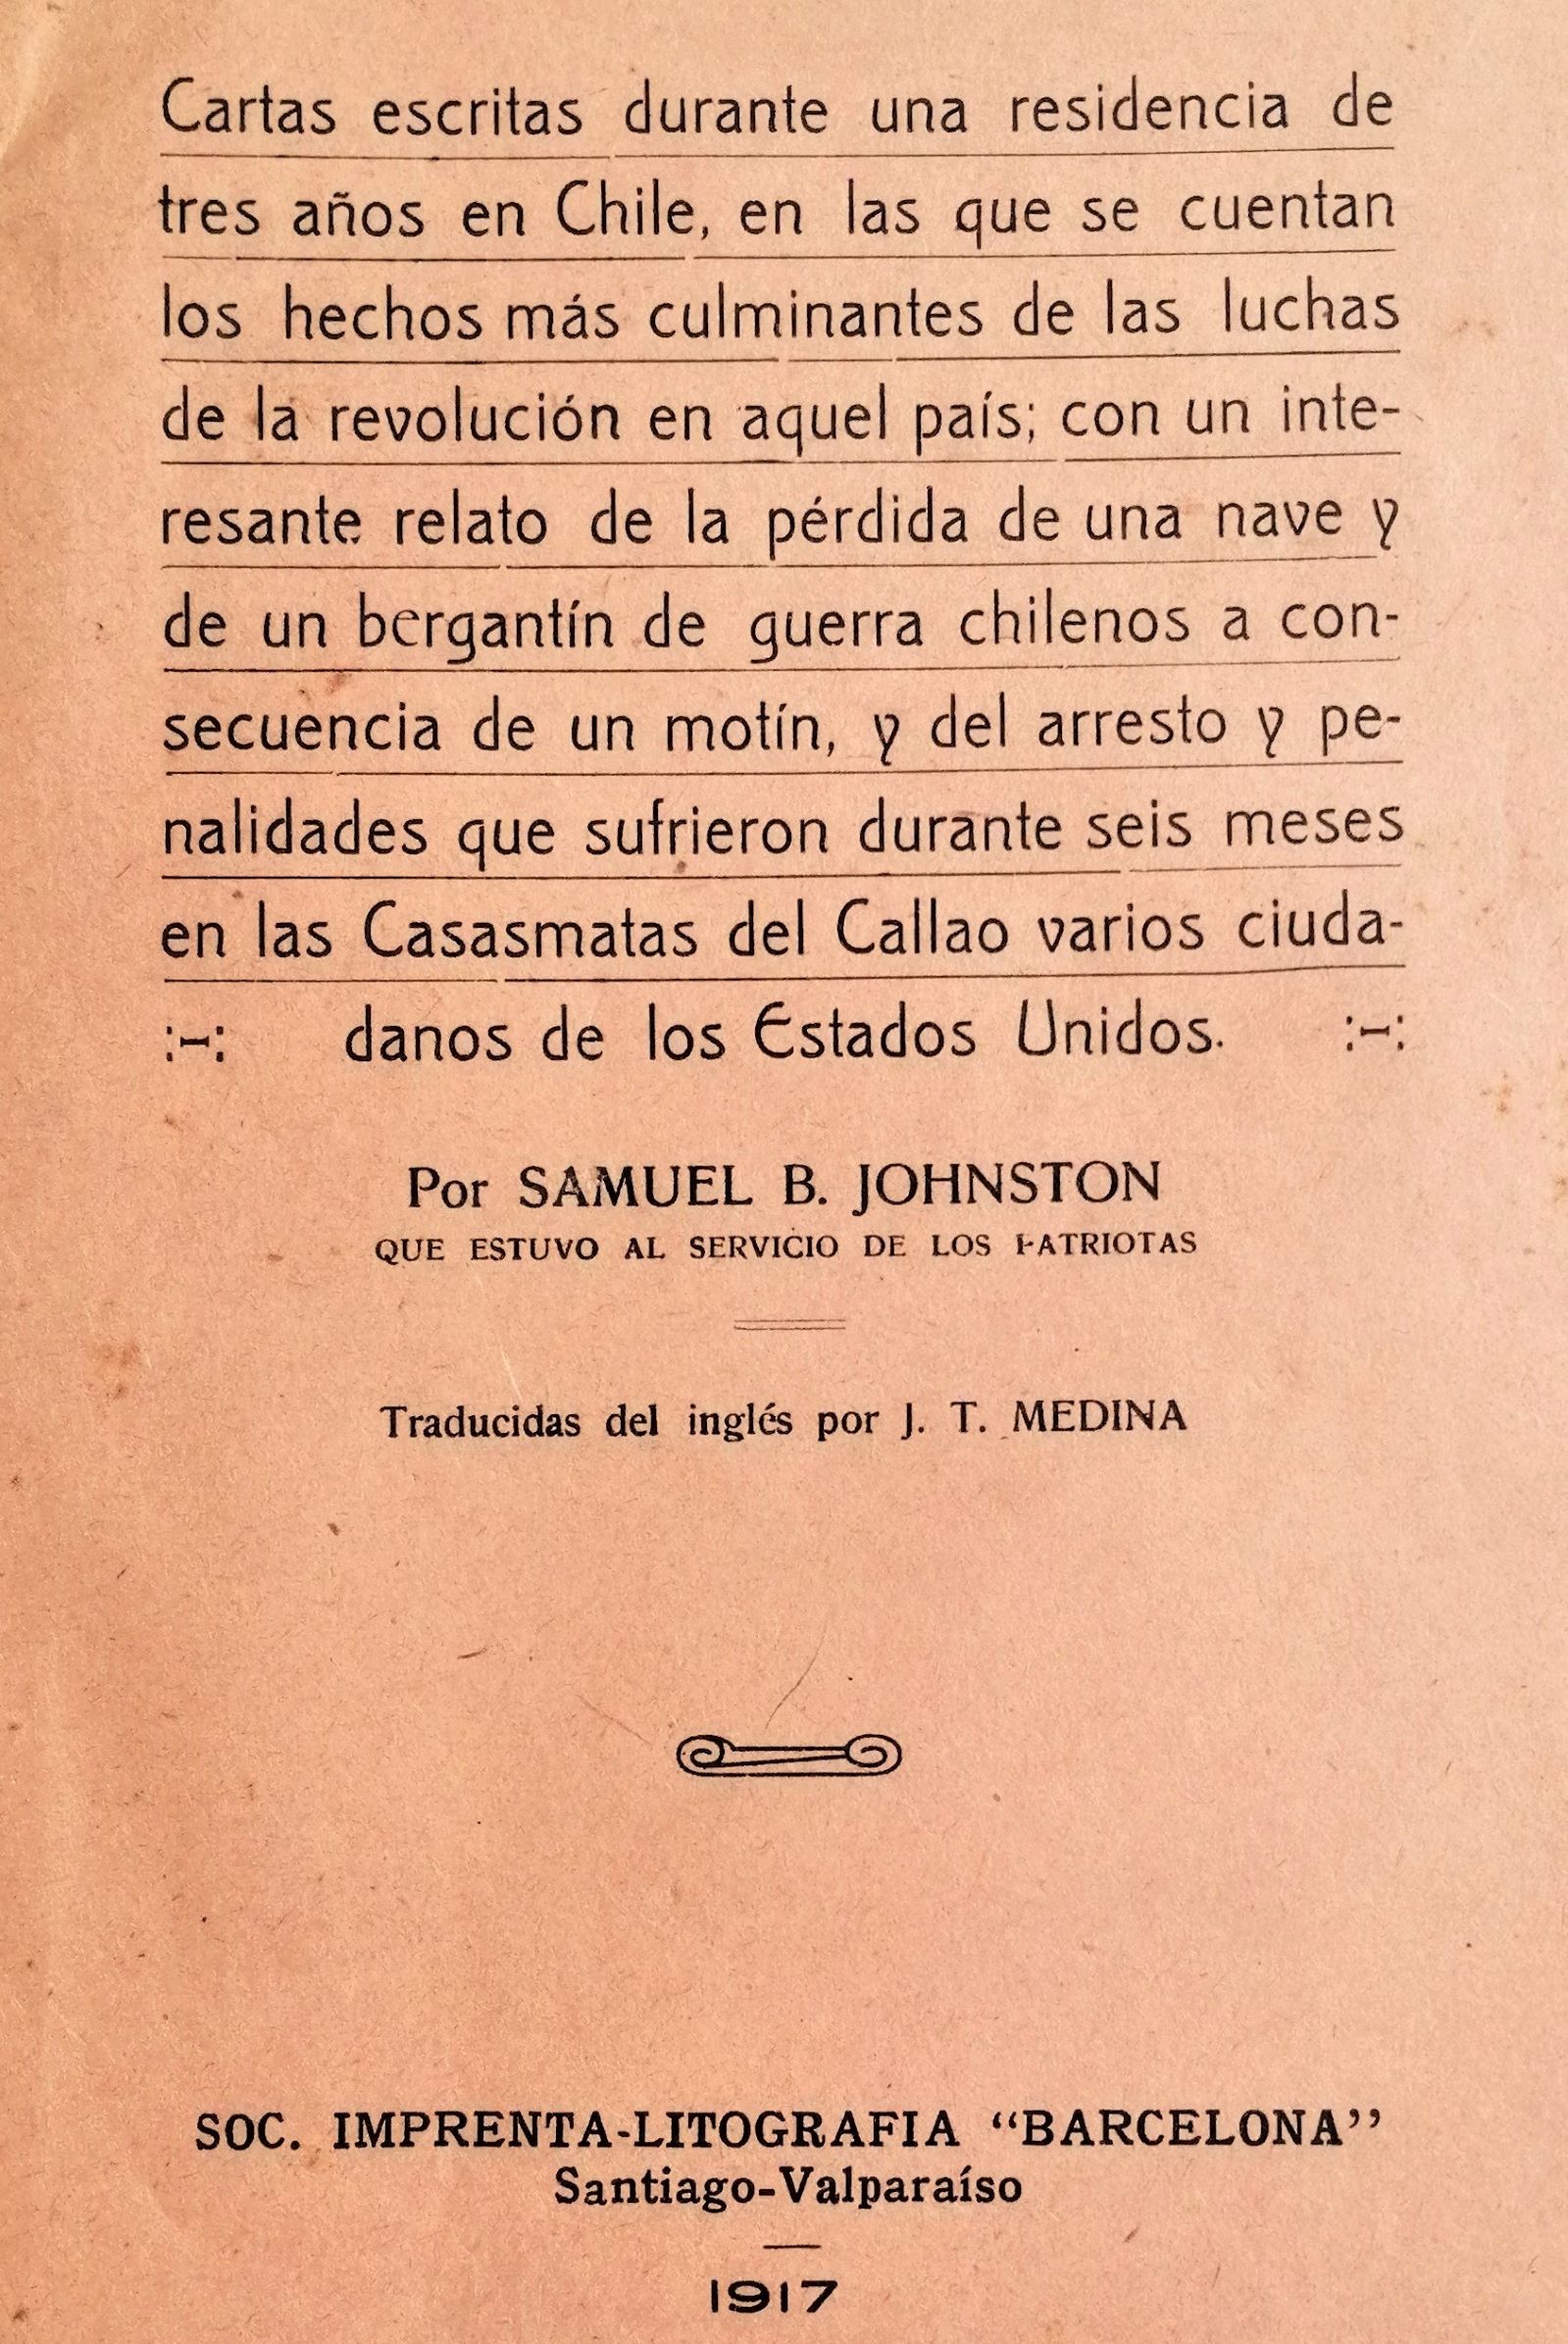 Samuel B. Johnston - Cartas escritas durante una residencia de tres años en Chile